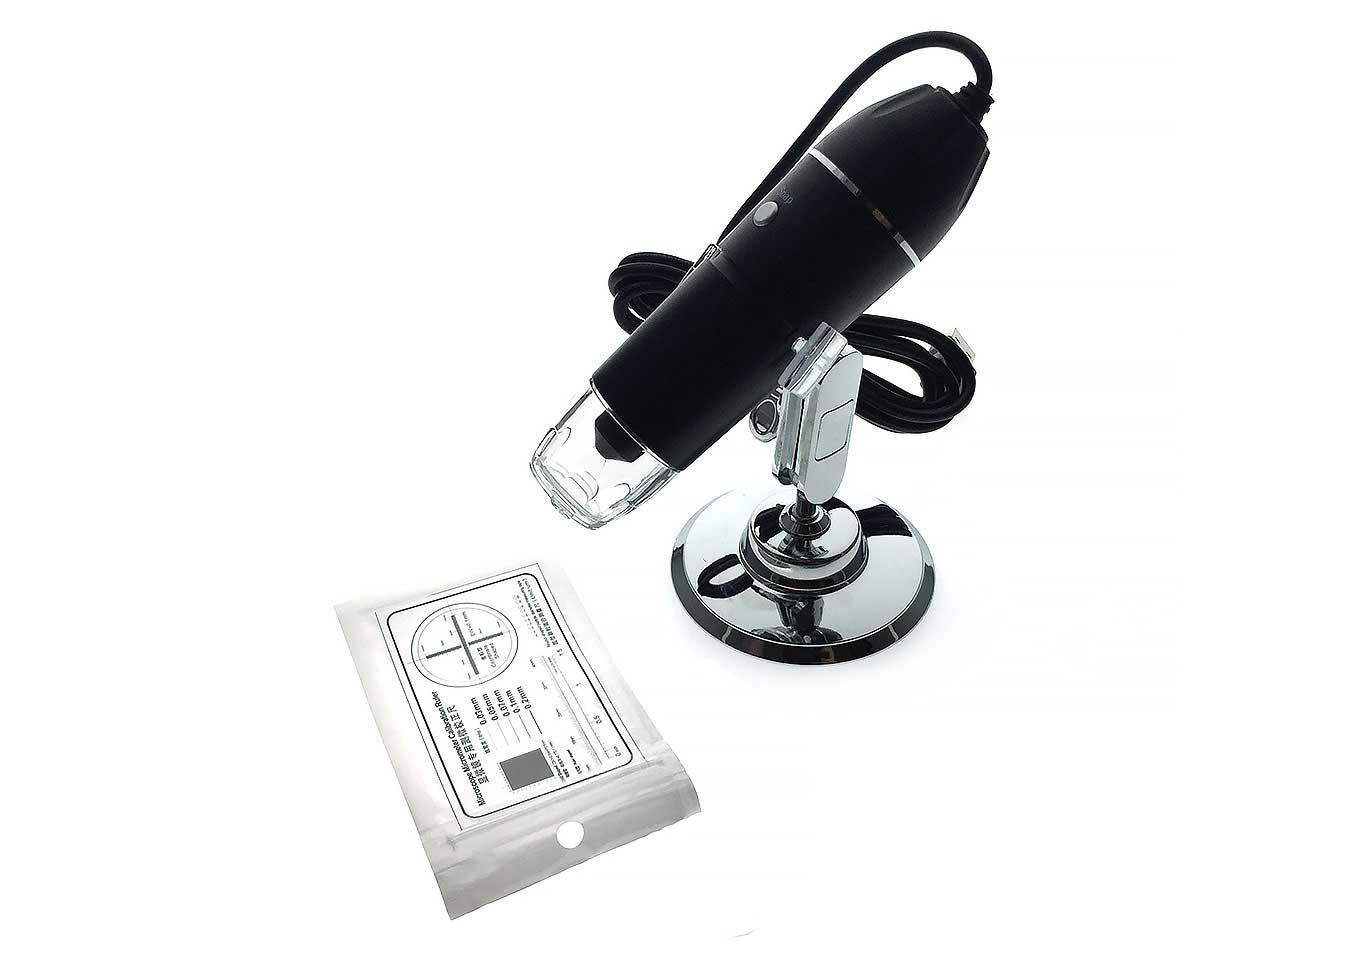 USB-микроскоп цифровой Espada U1600X цена и фото